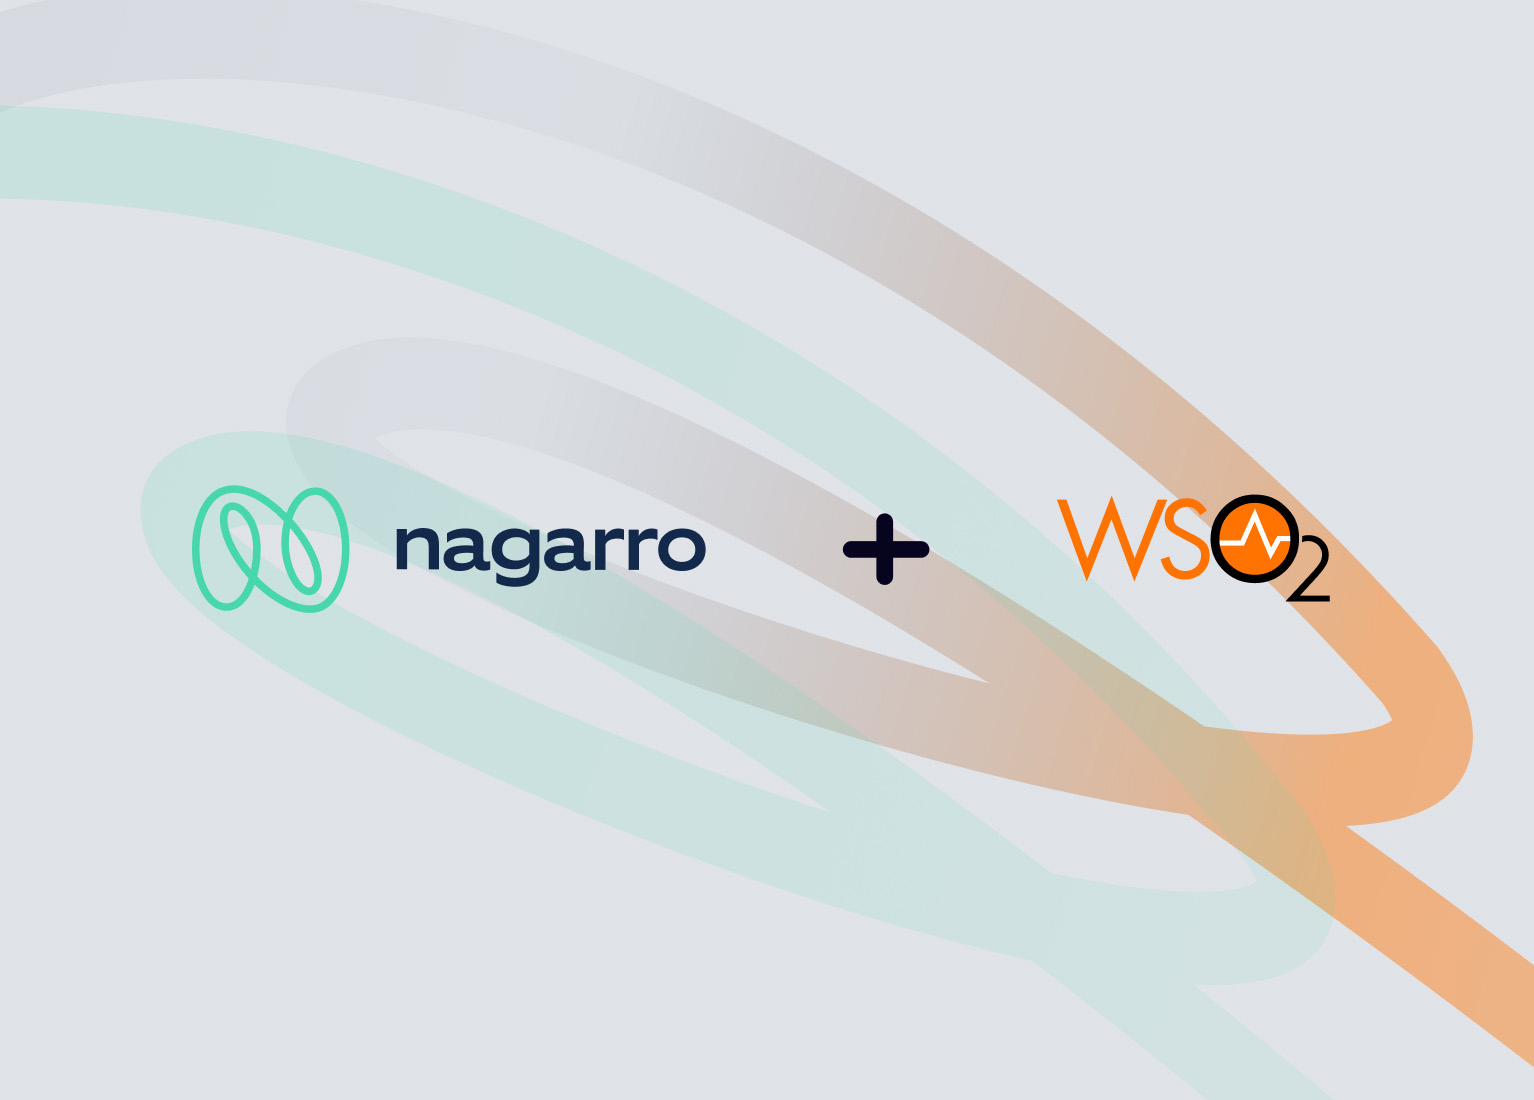 Nagarro and WSO2 enter into a partnership